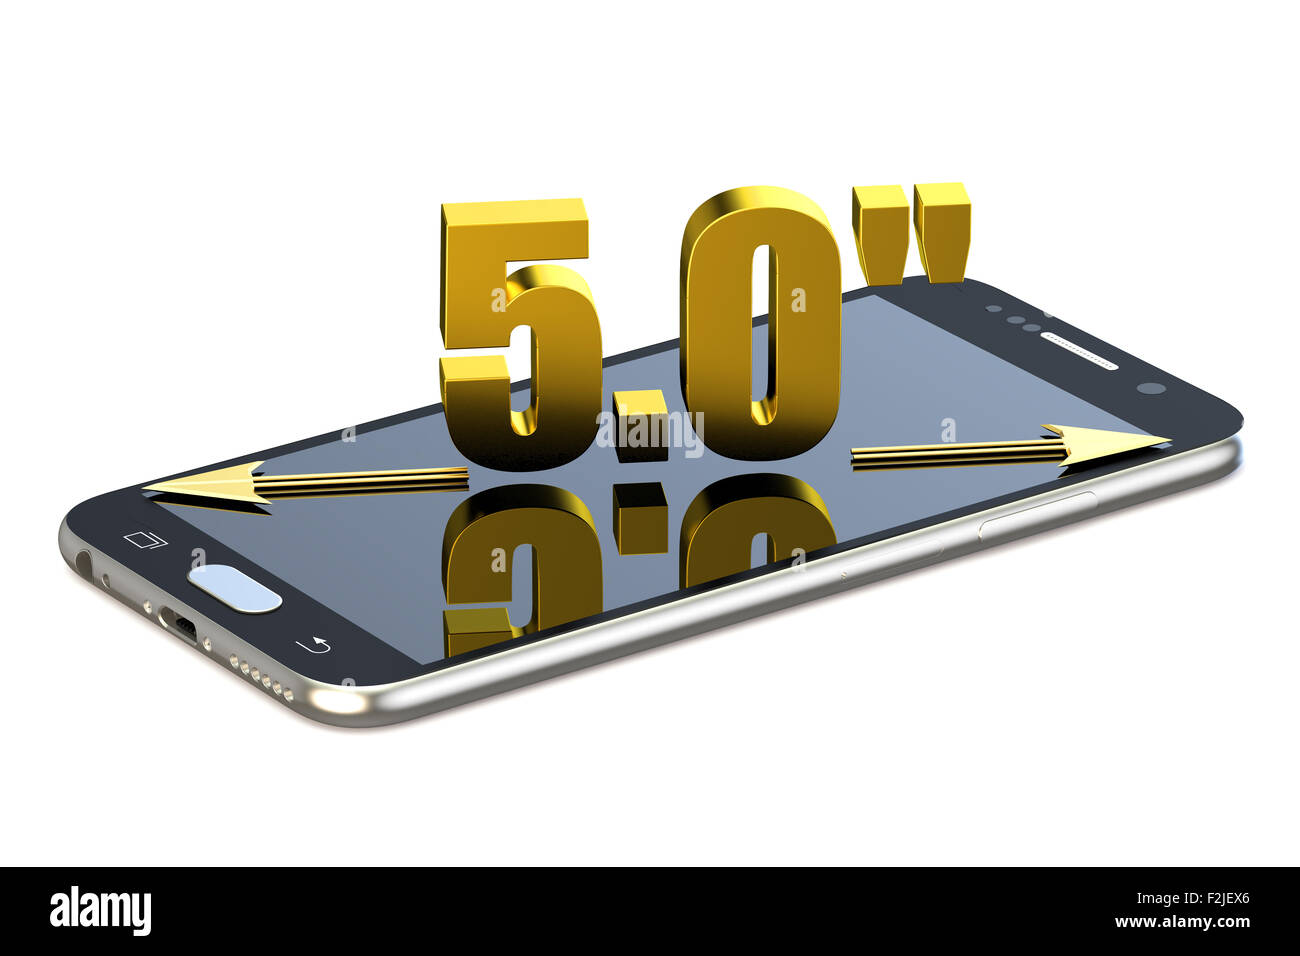 Smartphone avec 5.0 pouces de diagonale isolé sur fond blanc Banque D'Images